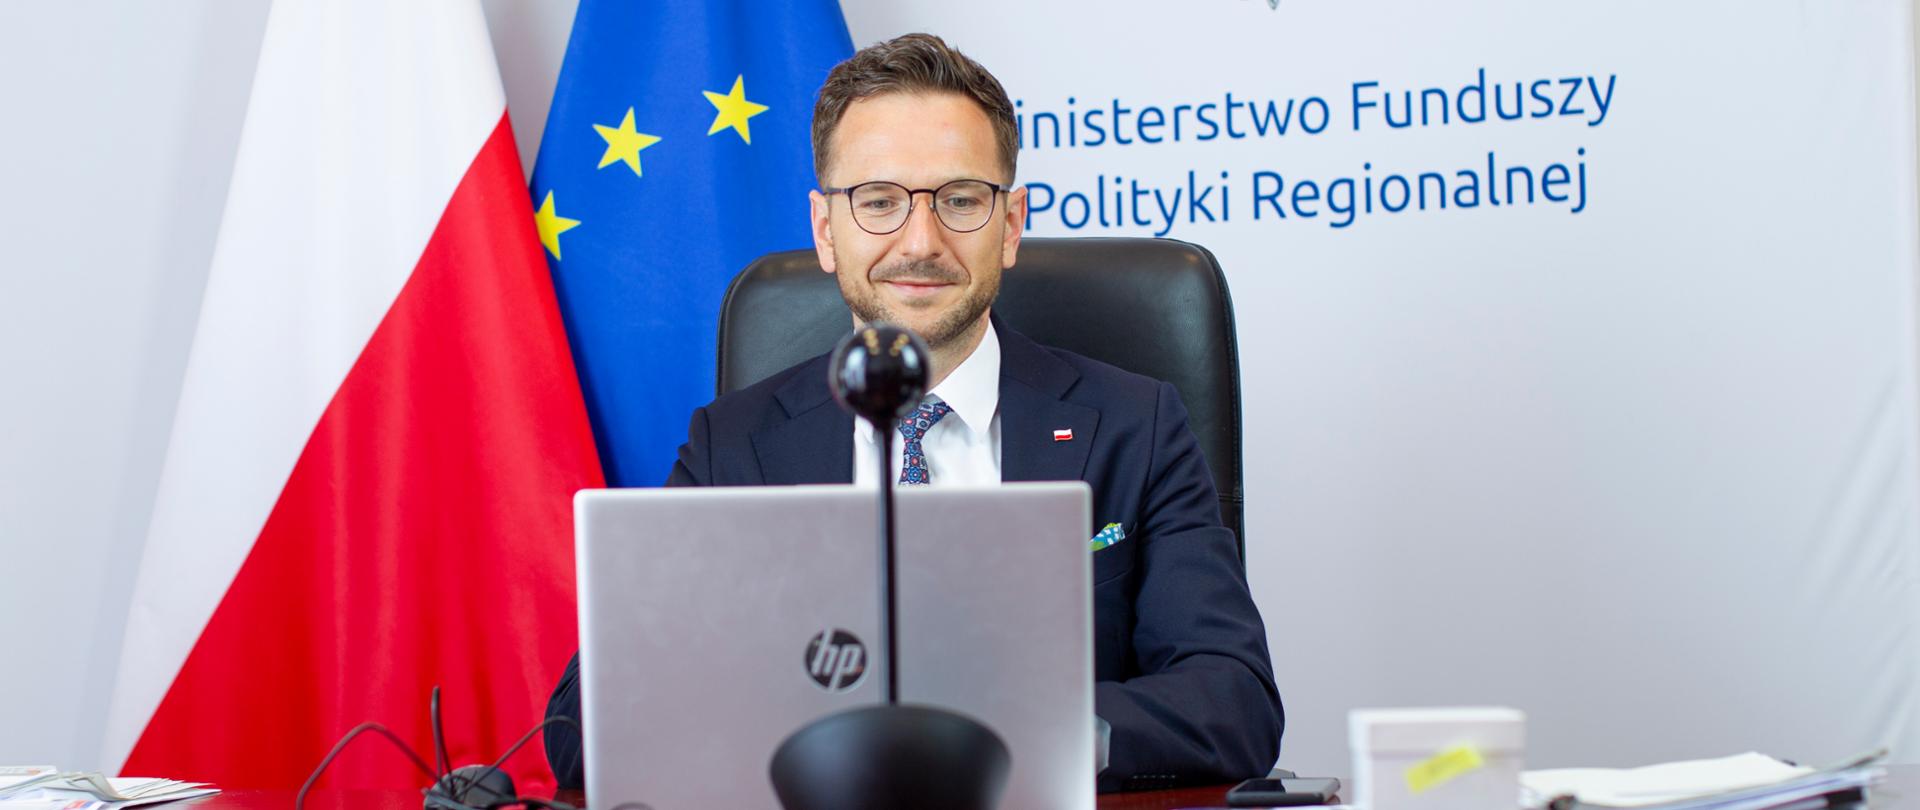 wiceminister Waldemar Buda uczestniczy w spotkaniu online, za nim flagi Polski i Unii Europejskiej